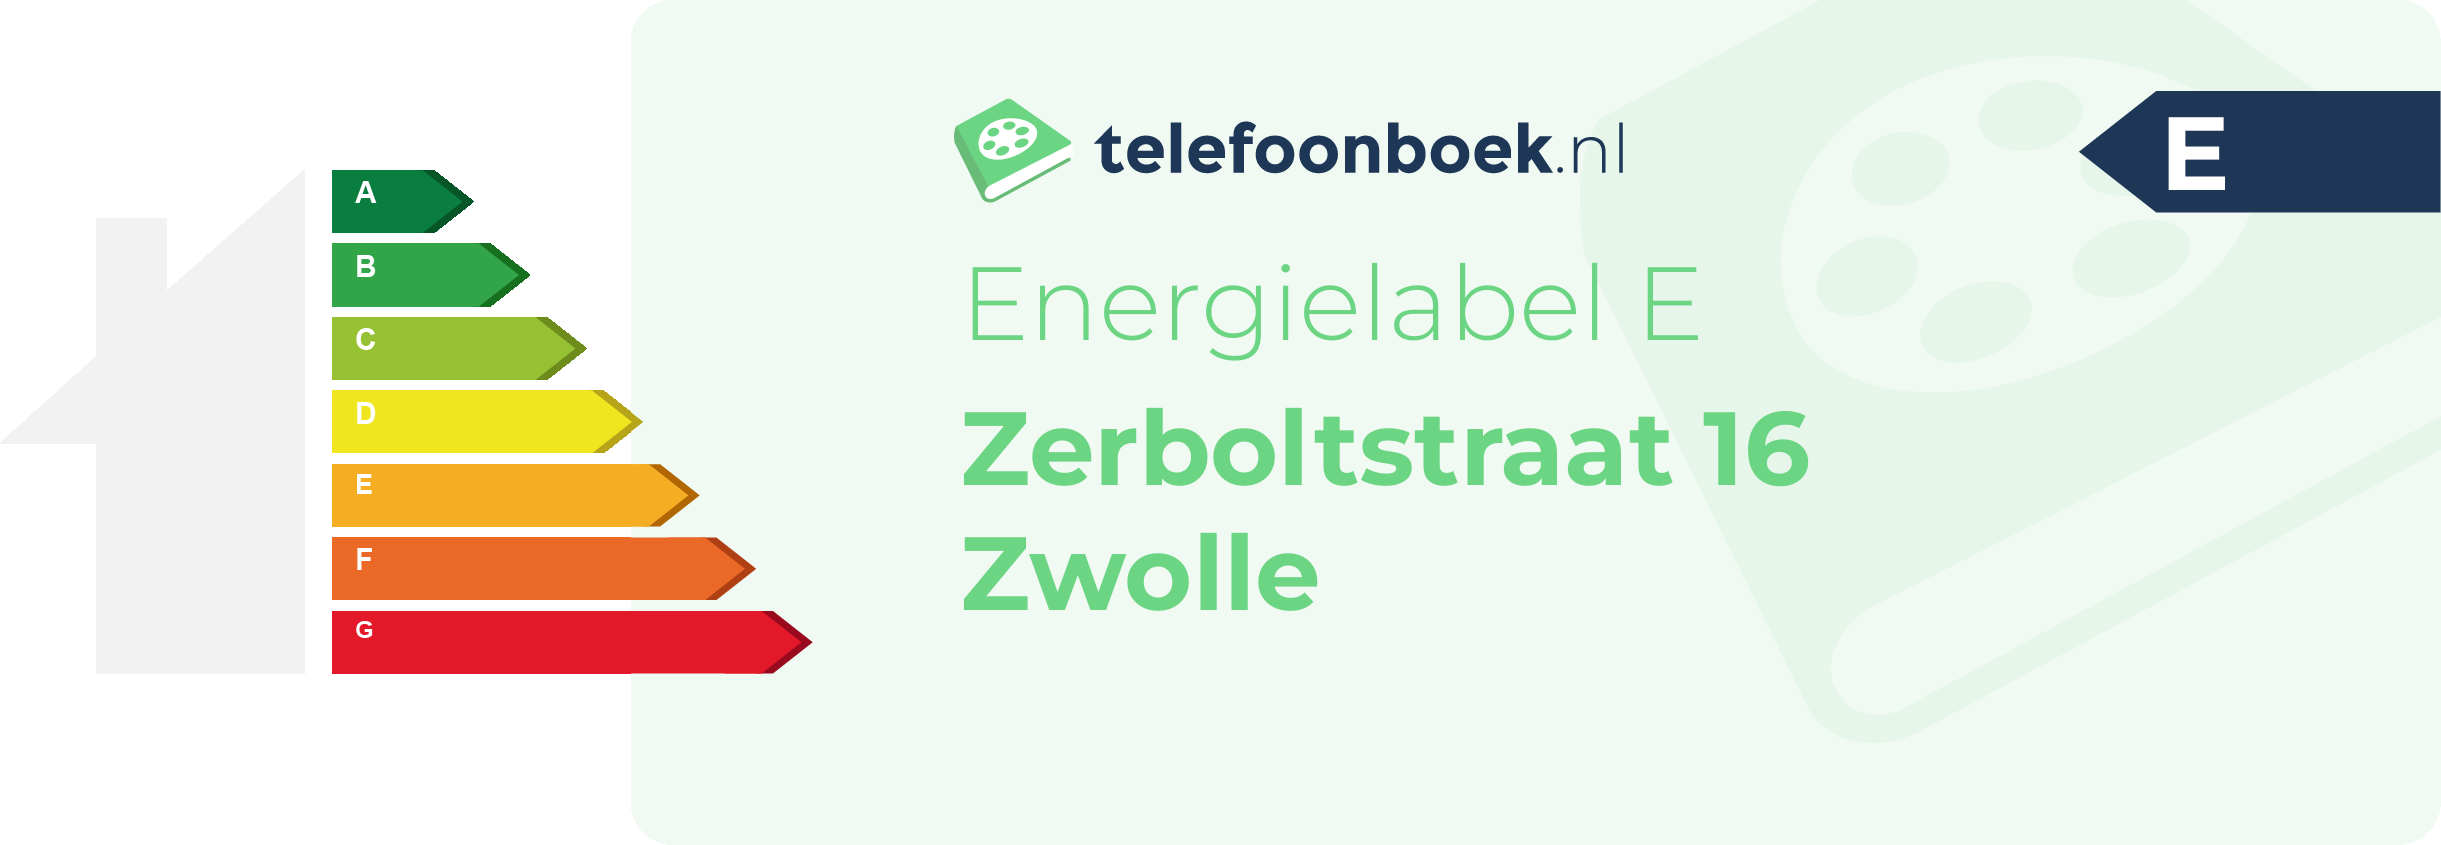 Energielabel Zerboltstraat 16 Zwolle